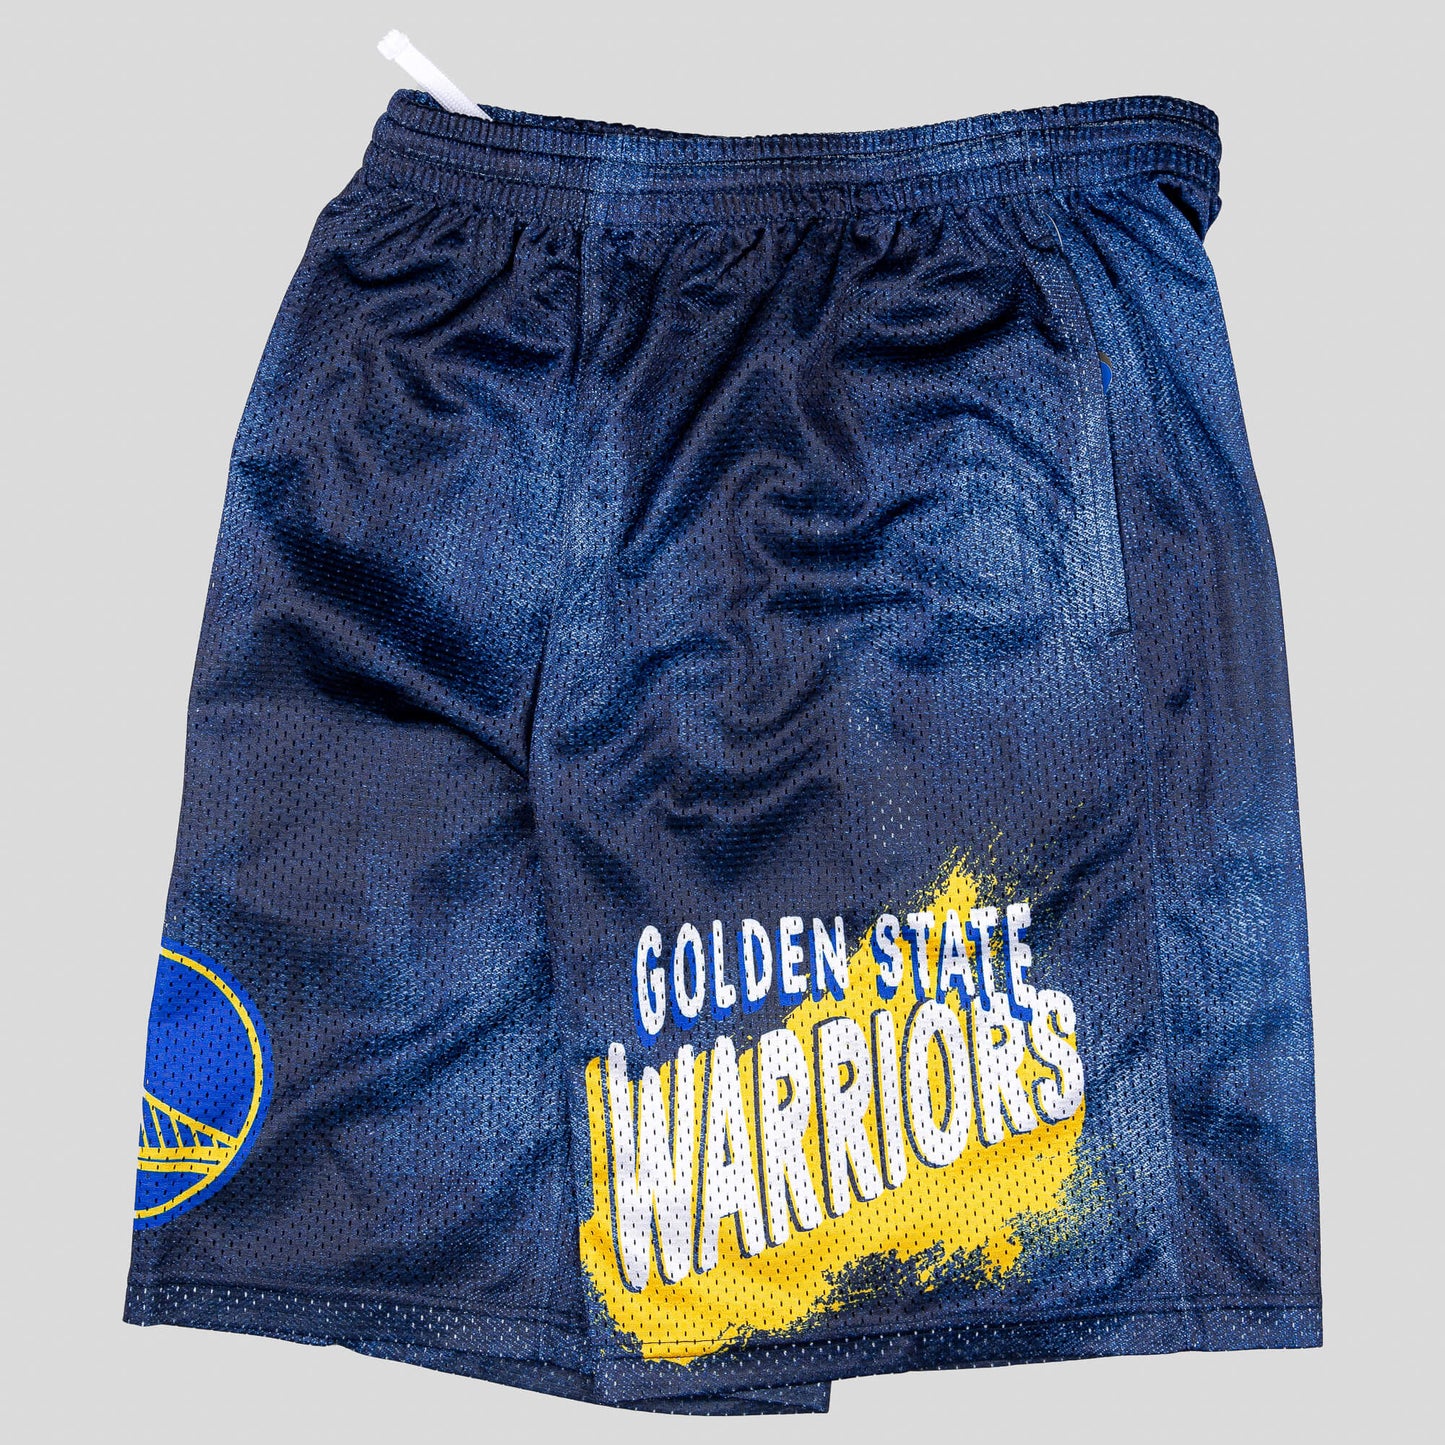 Outer Stuff Heating Up' Short Golden State Warriors Indigo